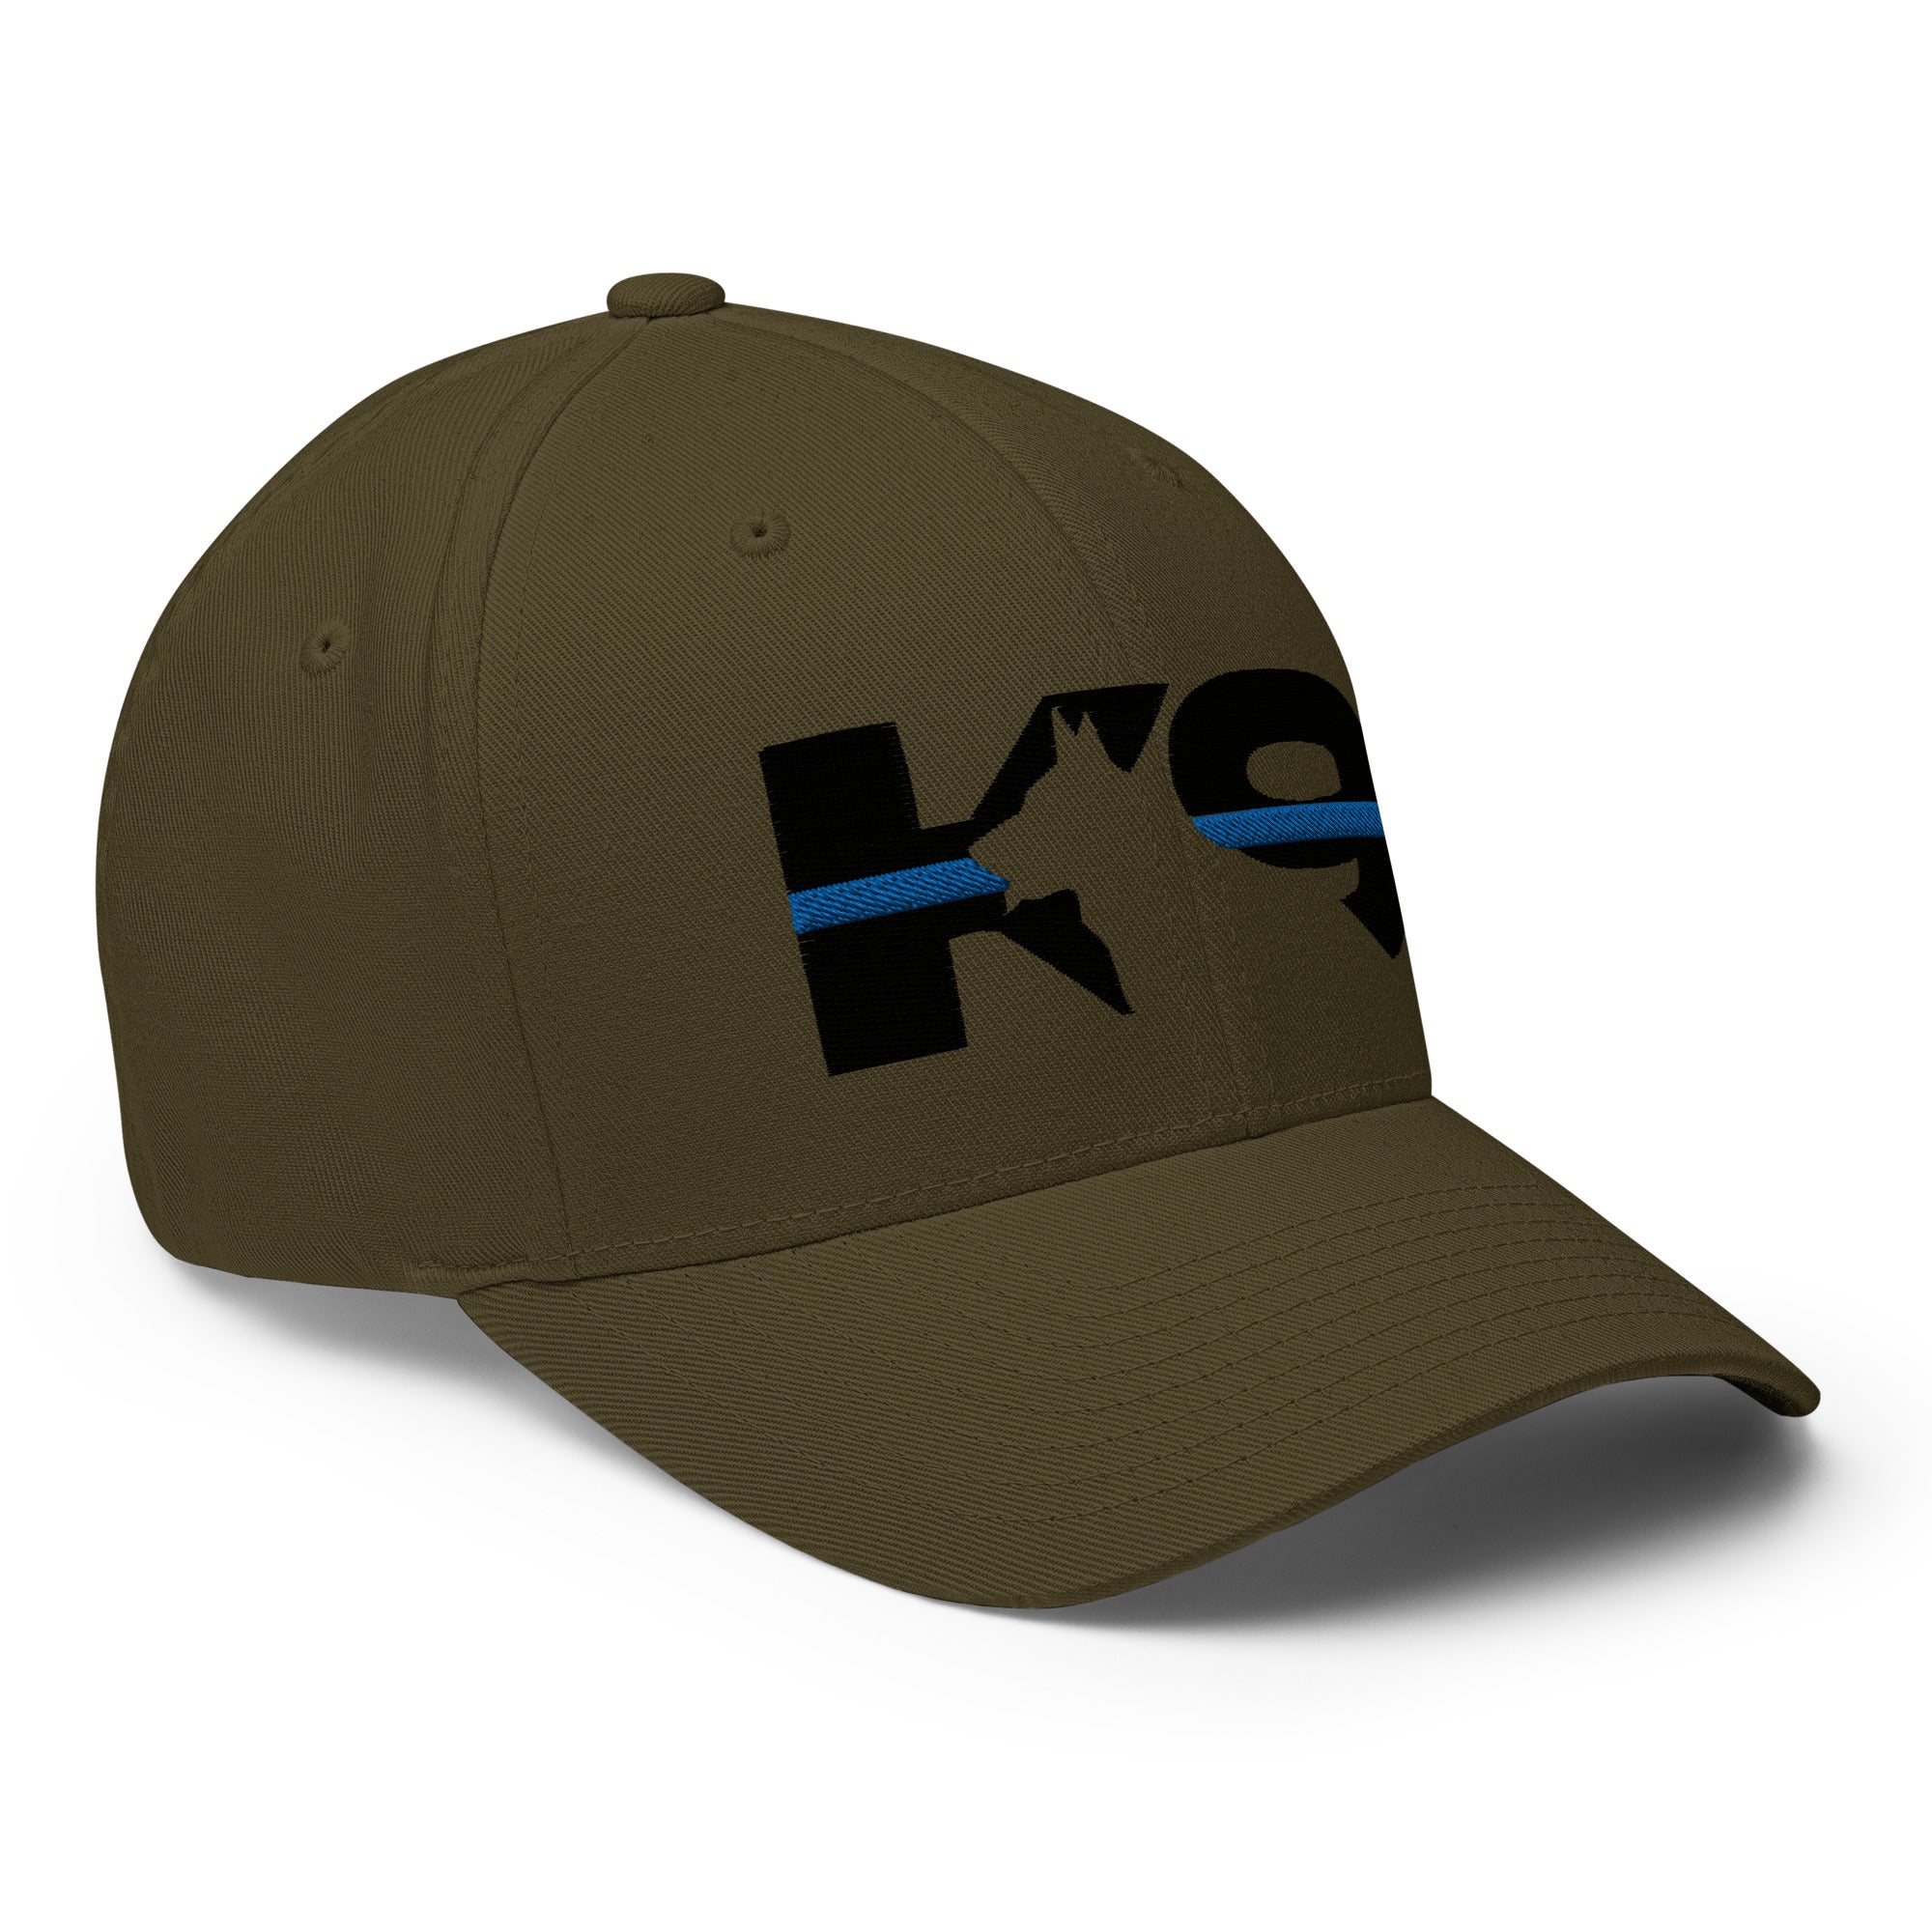 K-9 Thin Blue Line Flexfit Hat-Hats-Olive-S/M-Ardent Patriot Apparel Co.